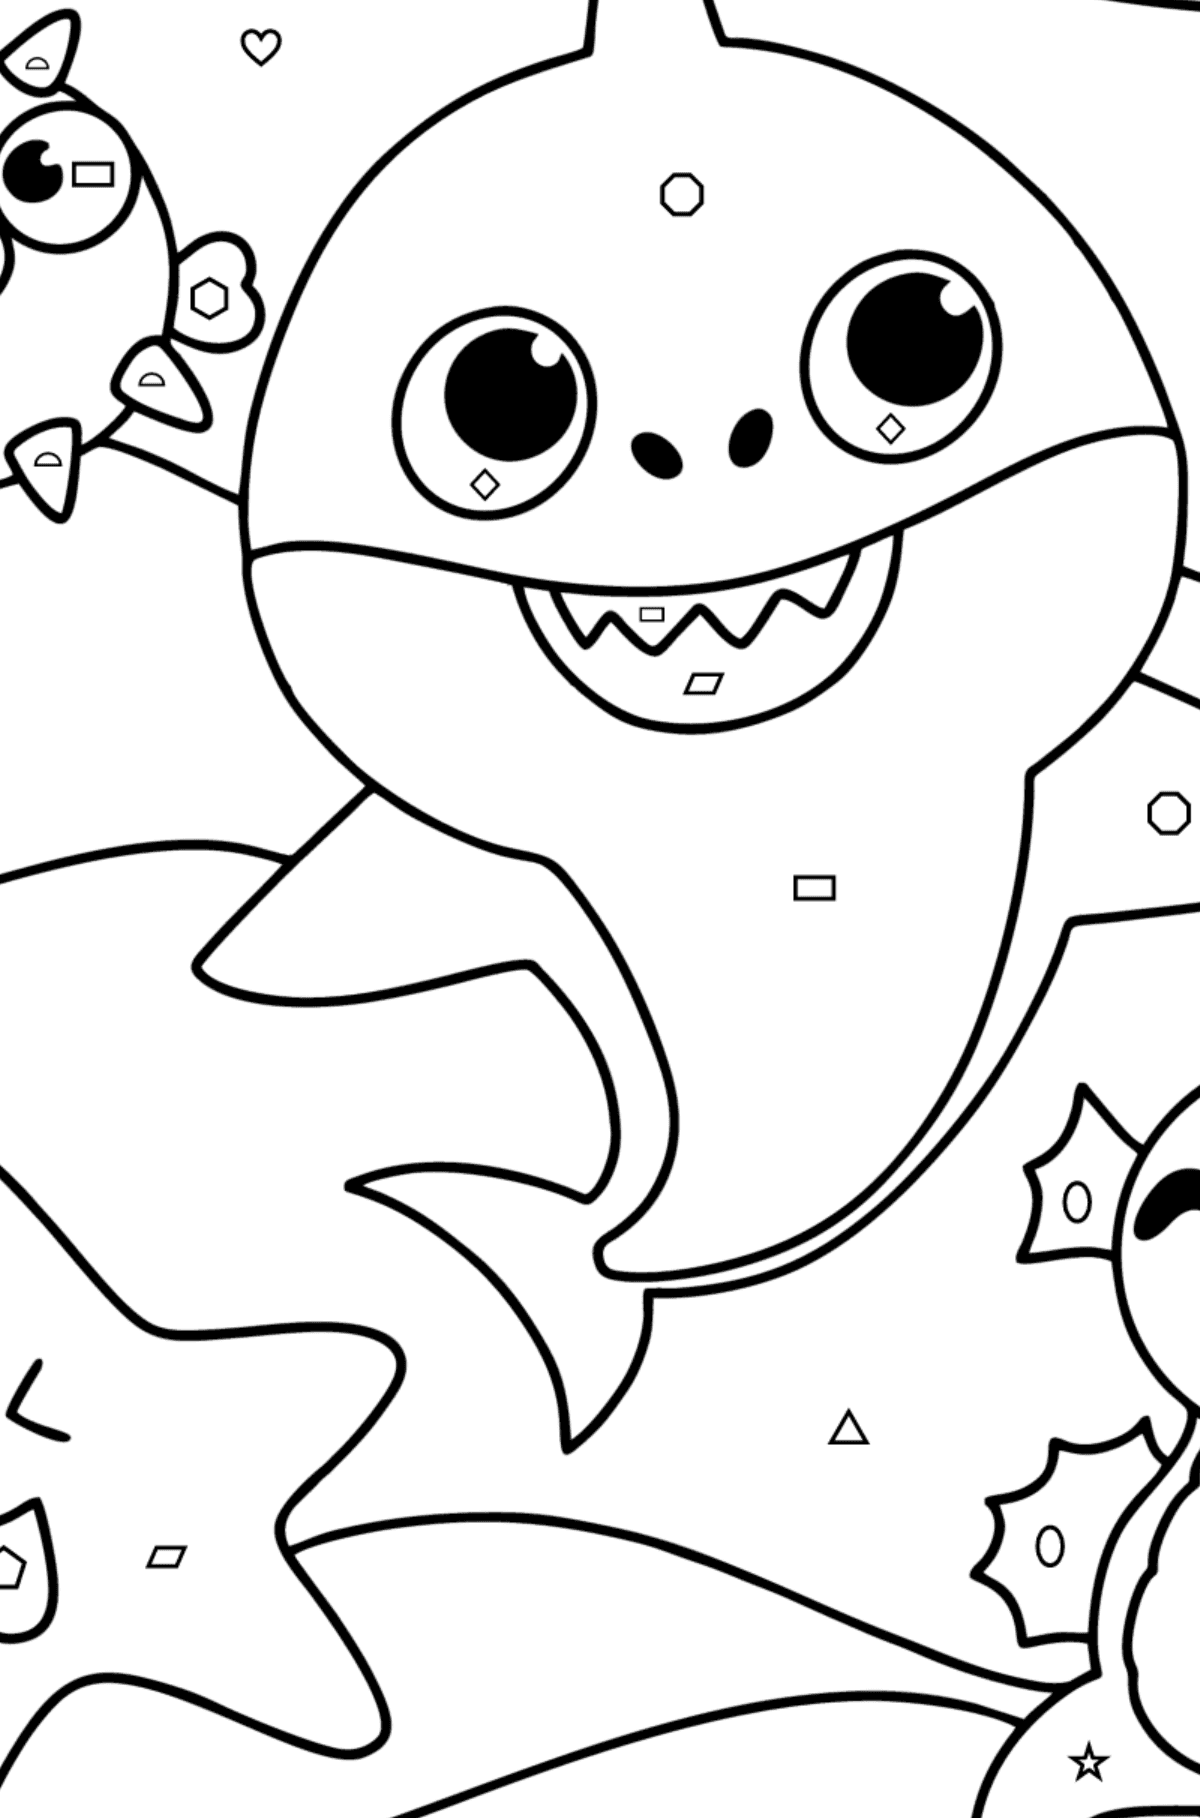 Venner Baby Shark tegning til fargelegging - Fargelegge etter geometriske former for barn